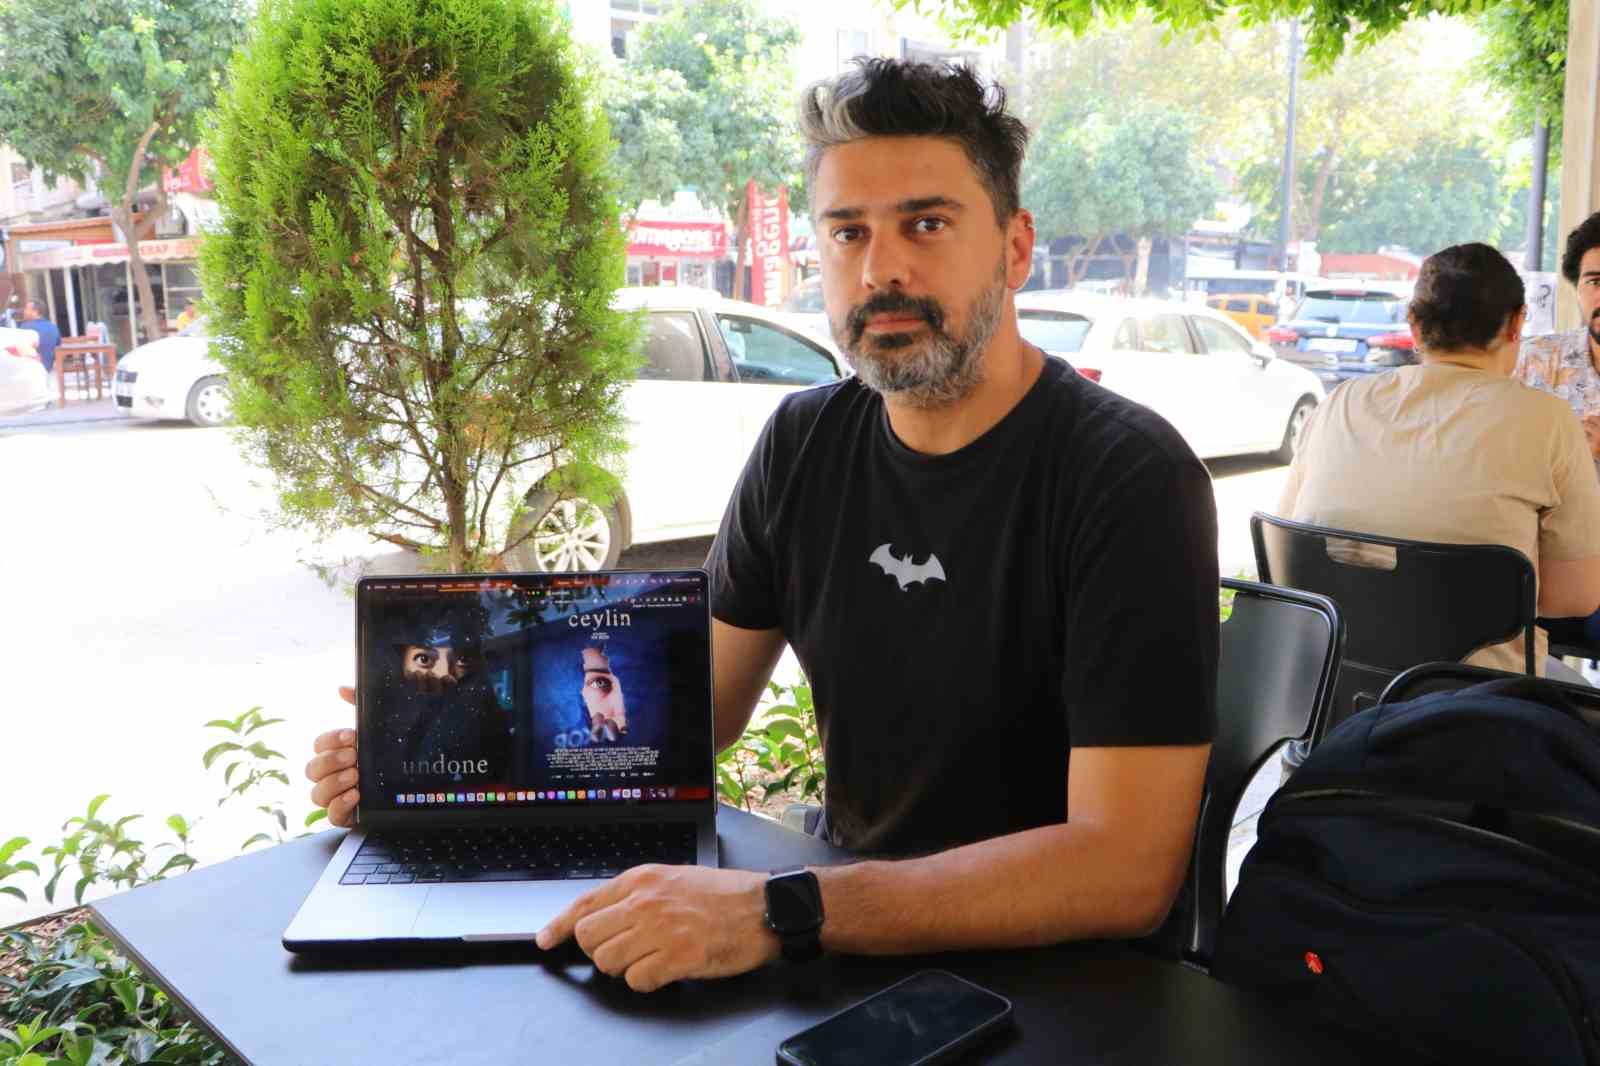 Yönetmen Ozan Sihay: "Ortak yönetmen diye bir tabir sinemada yok"